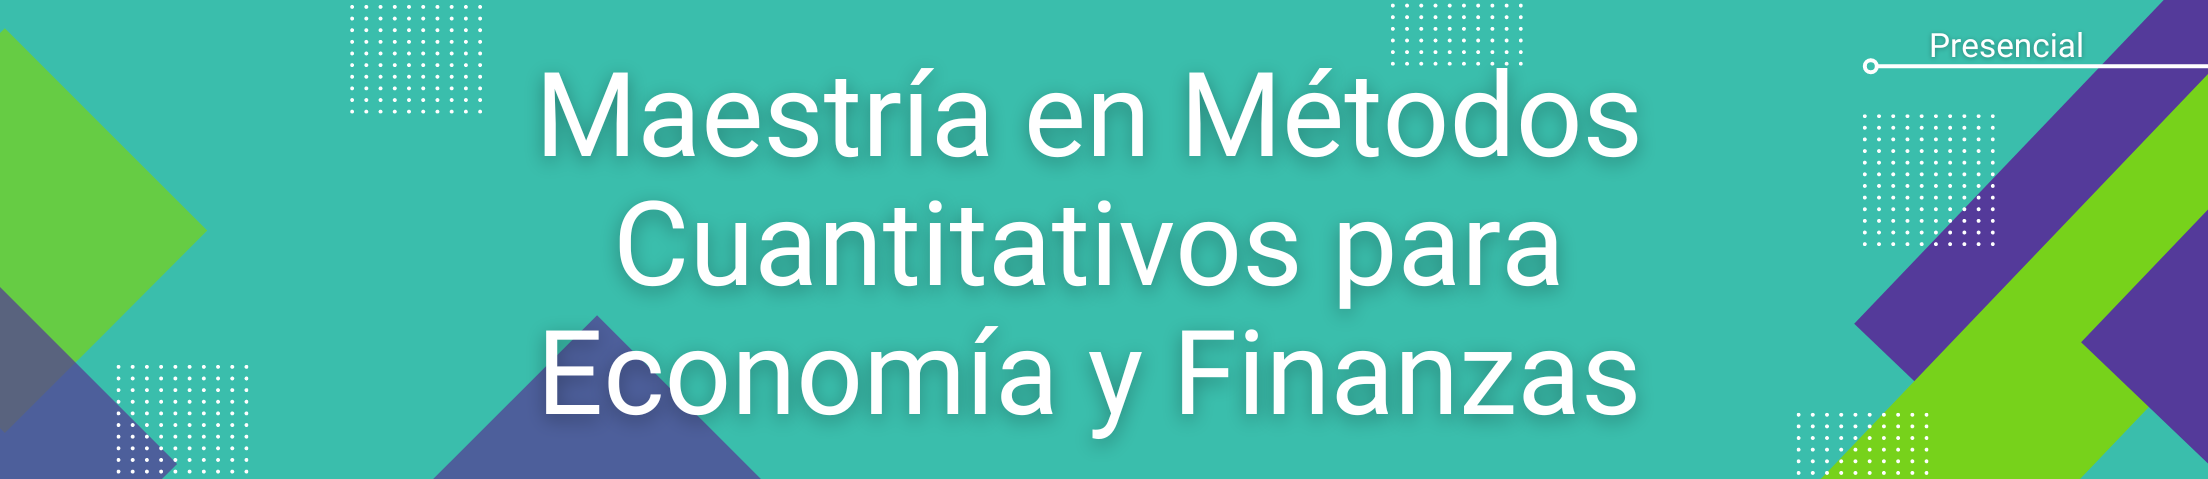 Banner Maestría en Métodos Cuantitativos para Economía y Finanzas. Modalidad: Presencial.